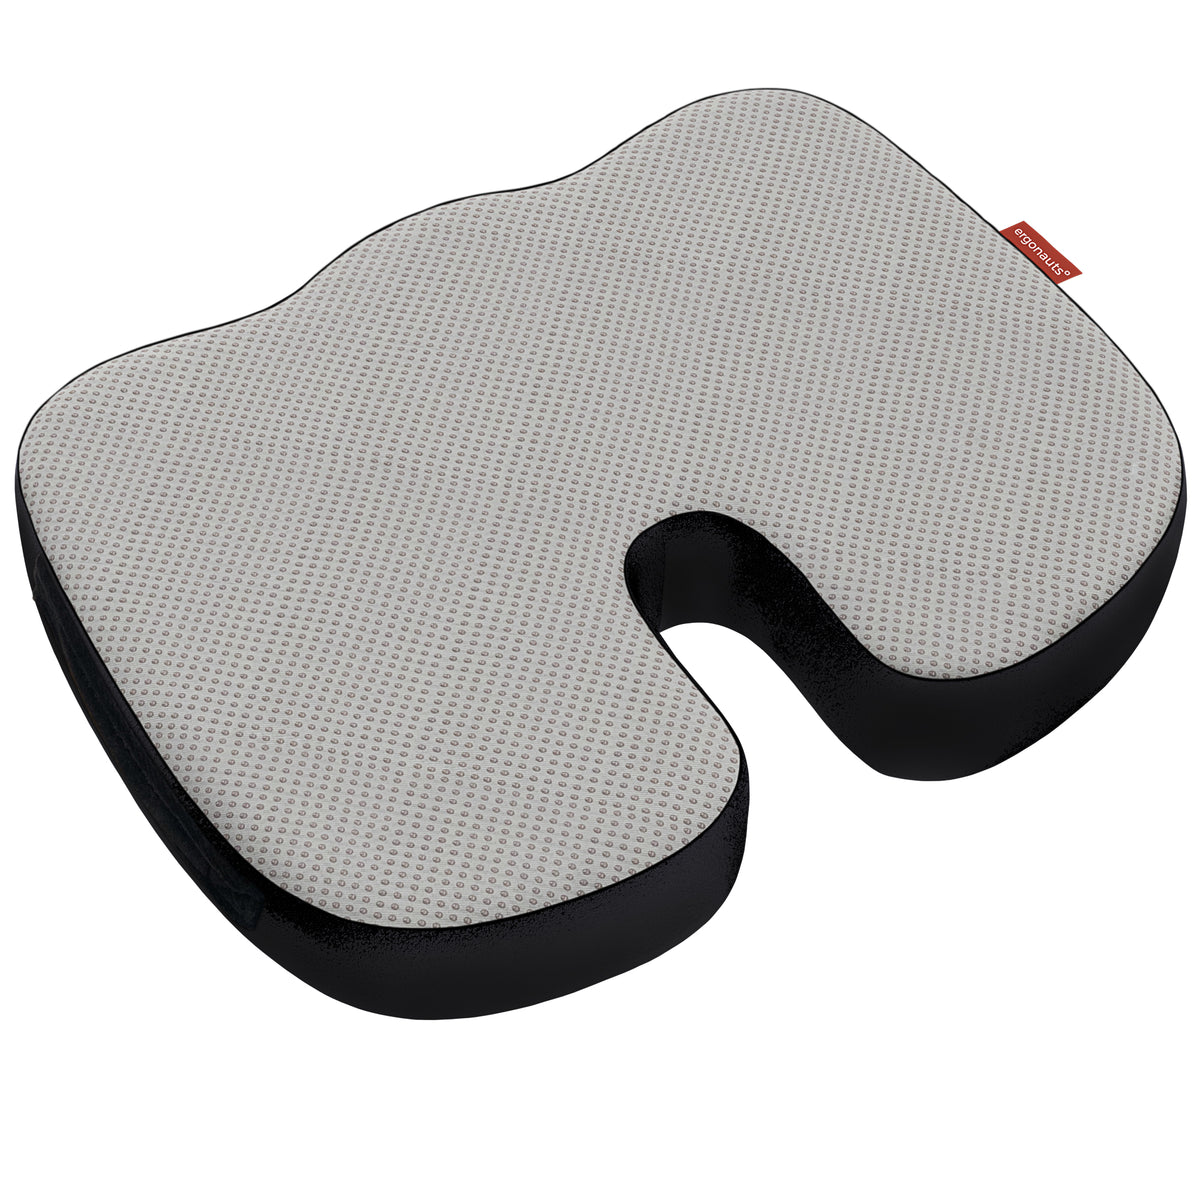 Gel Enhanced Coccyx Support Cushion – Ergonauts Travel